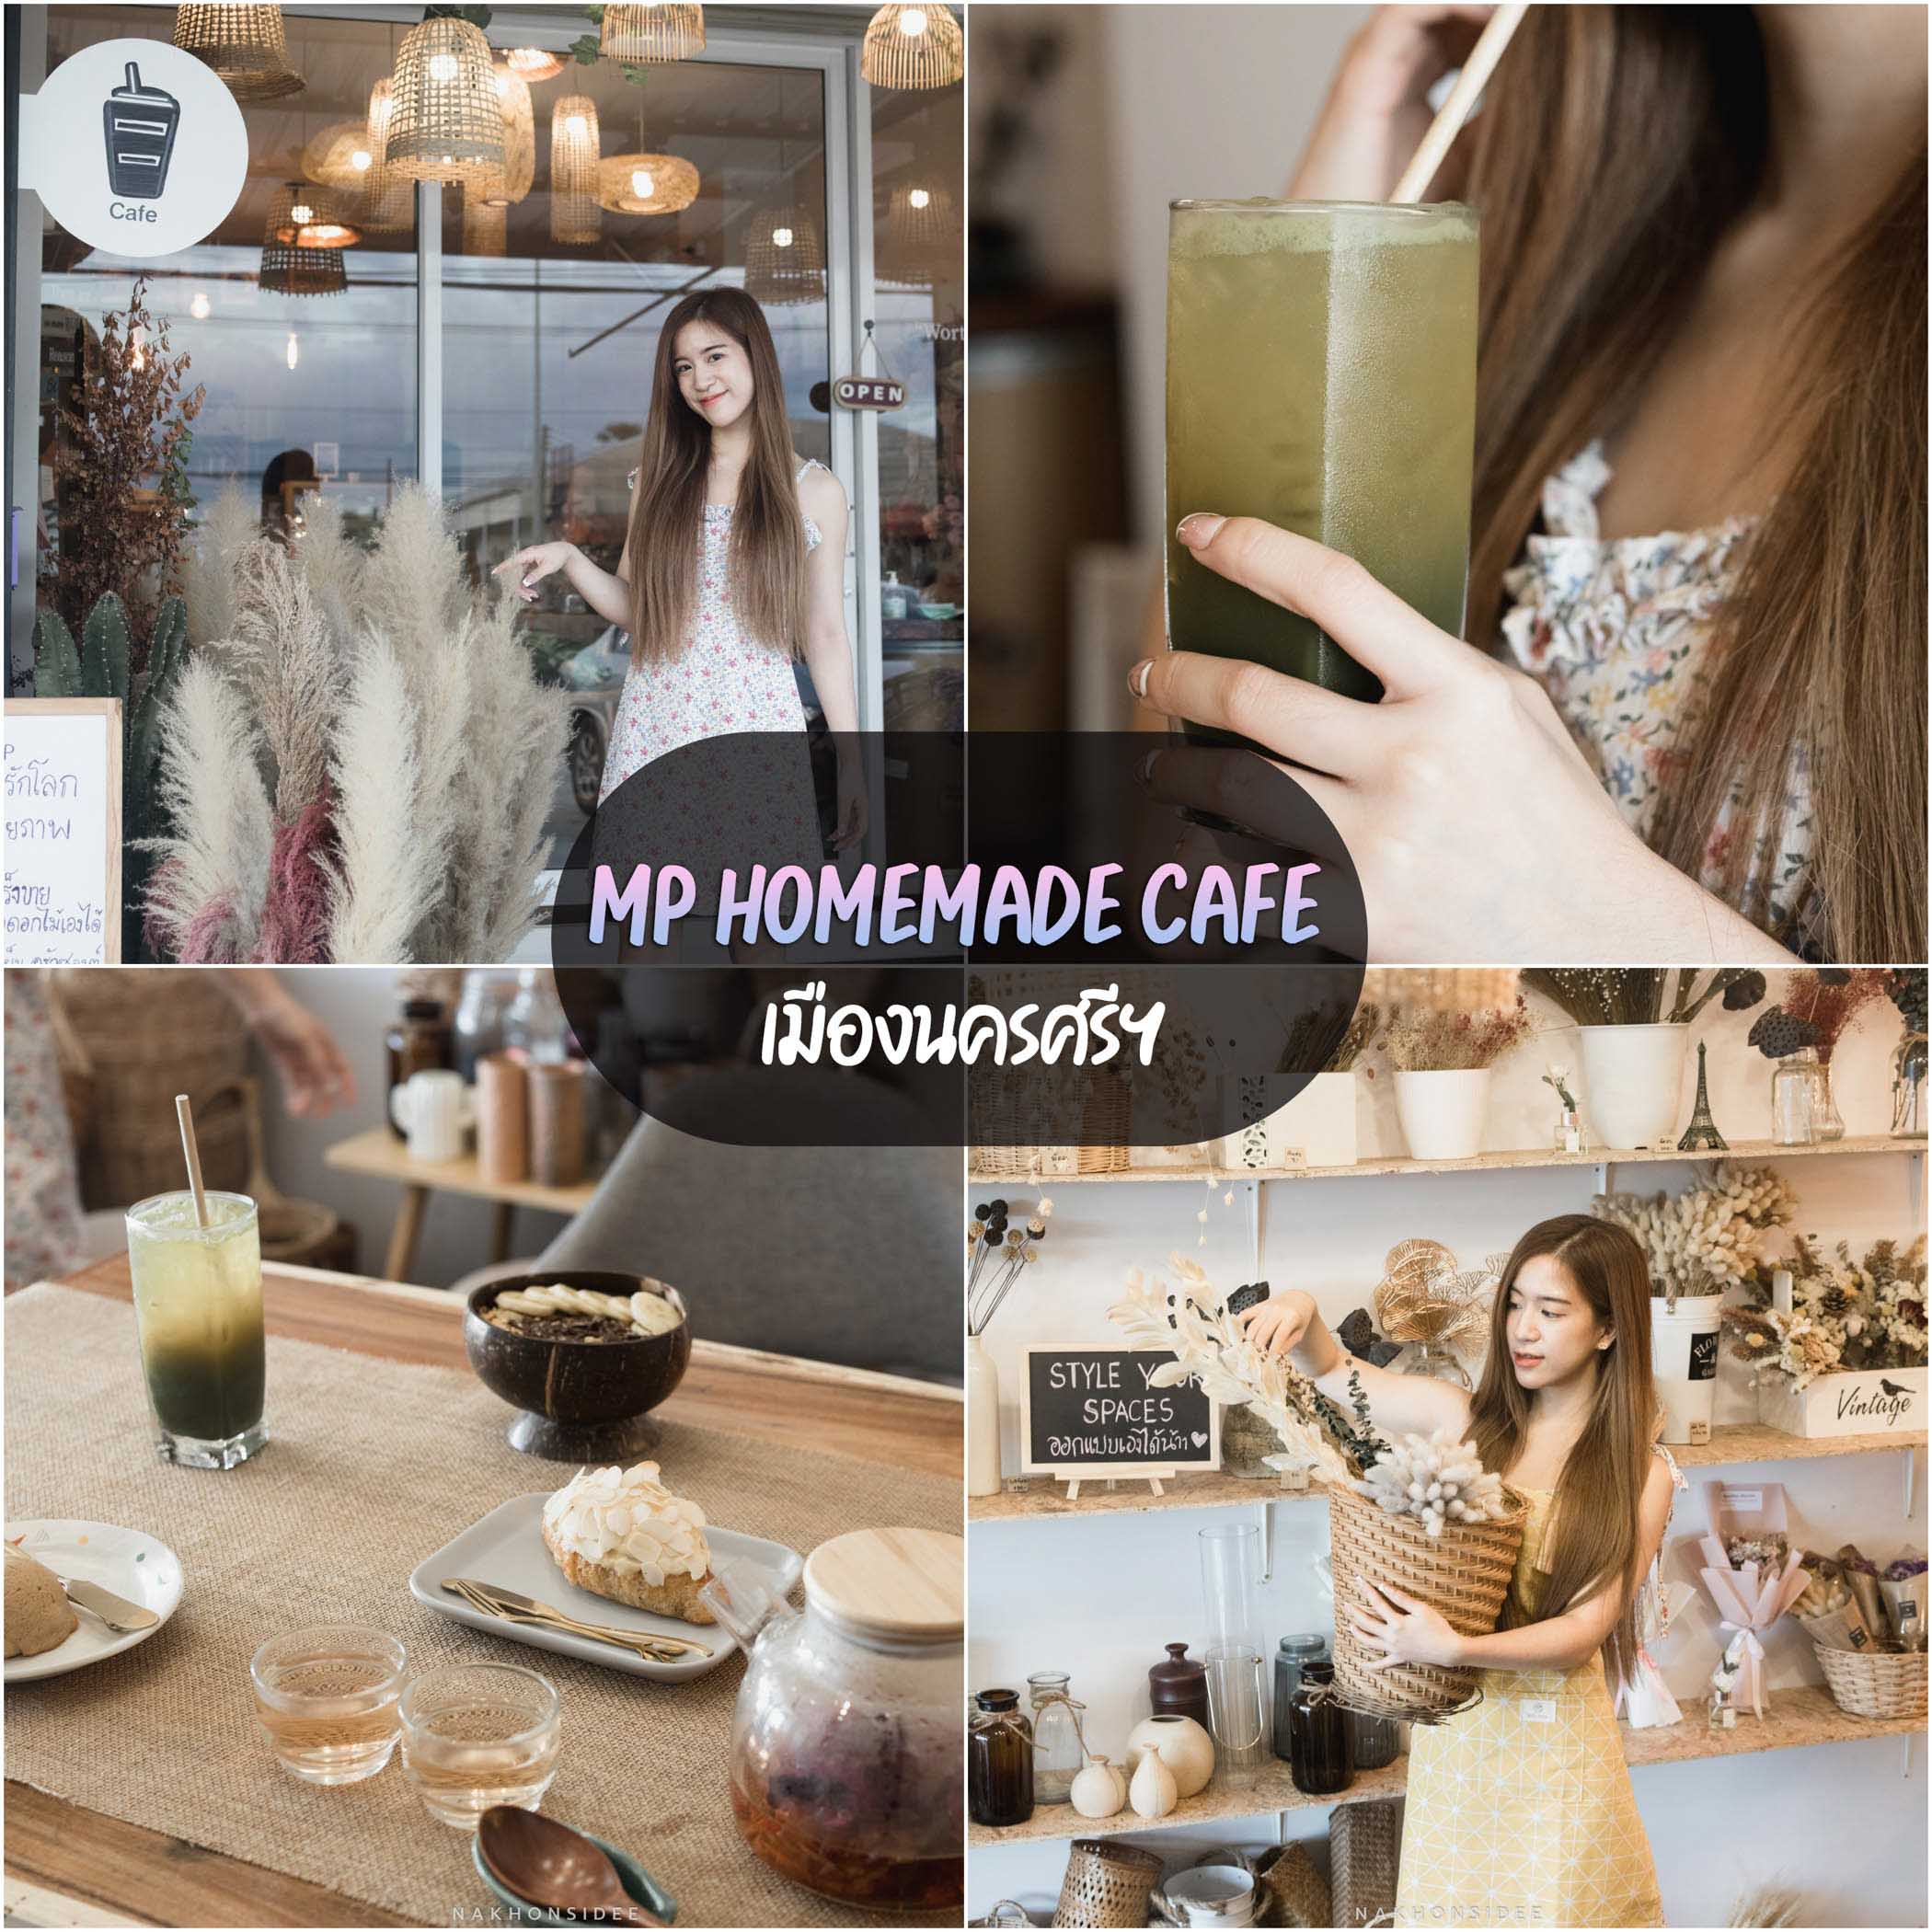 Mp-Homemade-Cafe  ร้านอาหารนครศรีธรรมราช,ของกิน,ร้านอาหาร,อร่อย,ก๋วยเตี๋ยว,คาเฟ่,ร้านเด็ด,ชาบู,ปิ้งย่าง,อาหารญี่ปุ่น,ร้านอร่อย,อาหารพื้นบ้าน